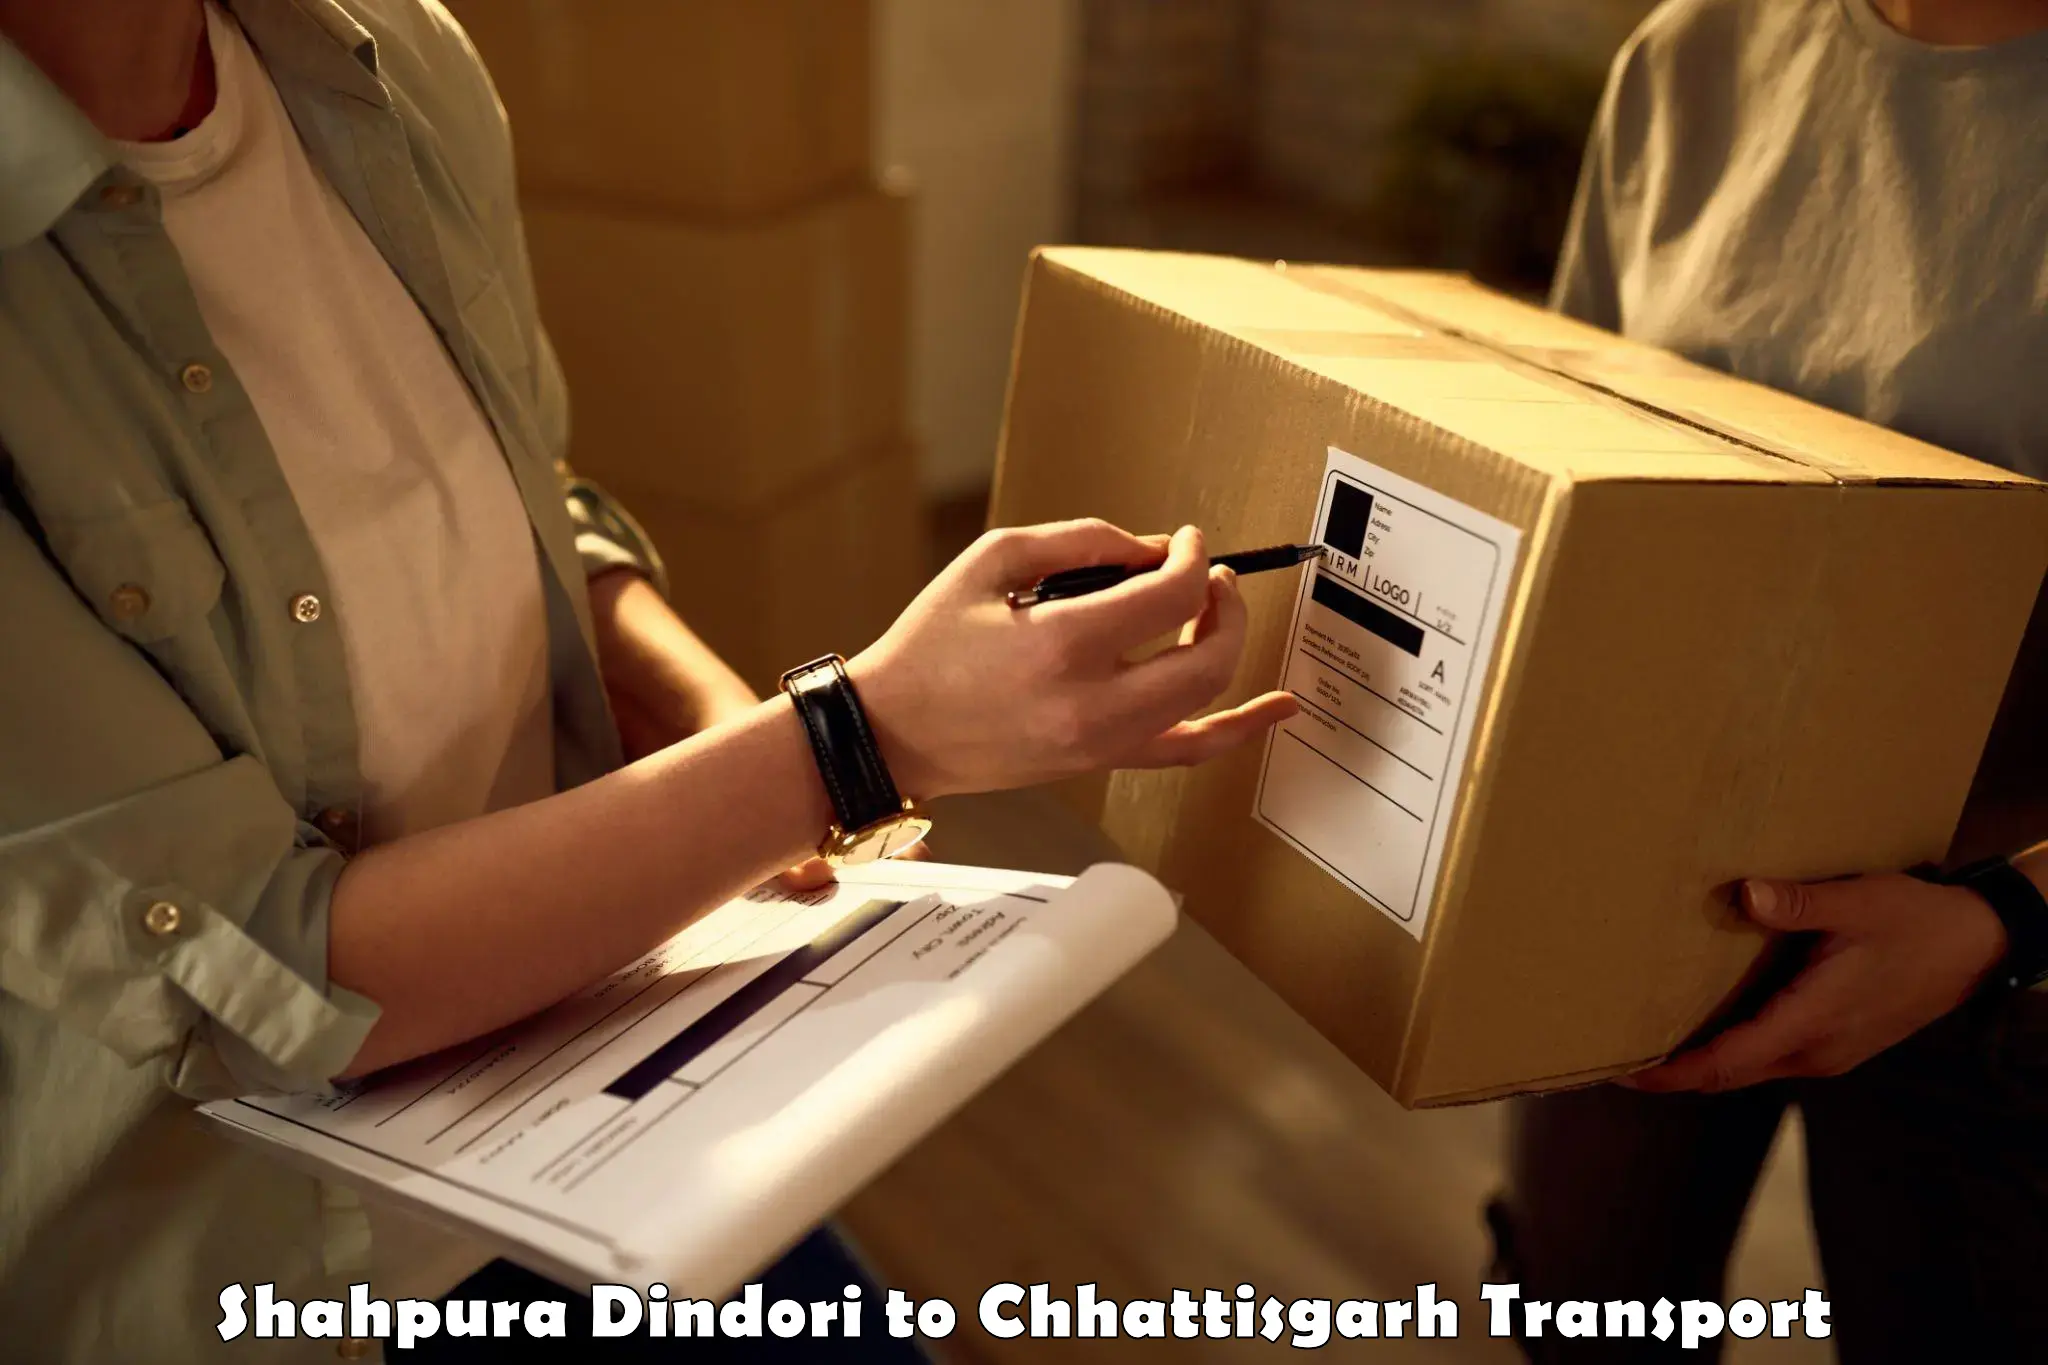 Part load transport service in India Shahpura Dindori to Raipur